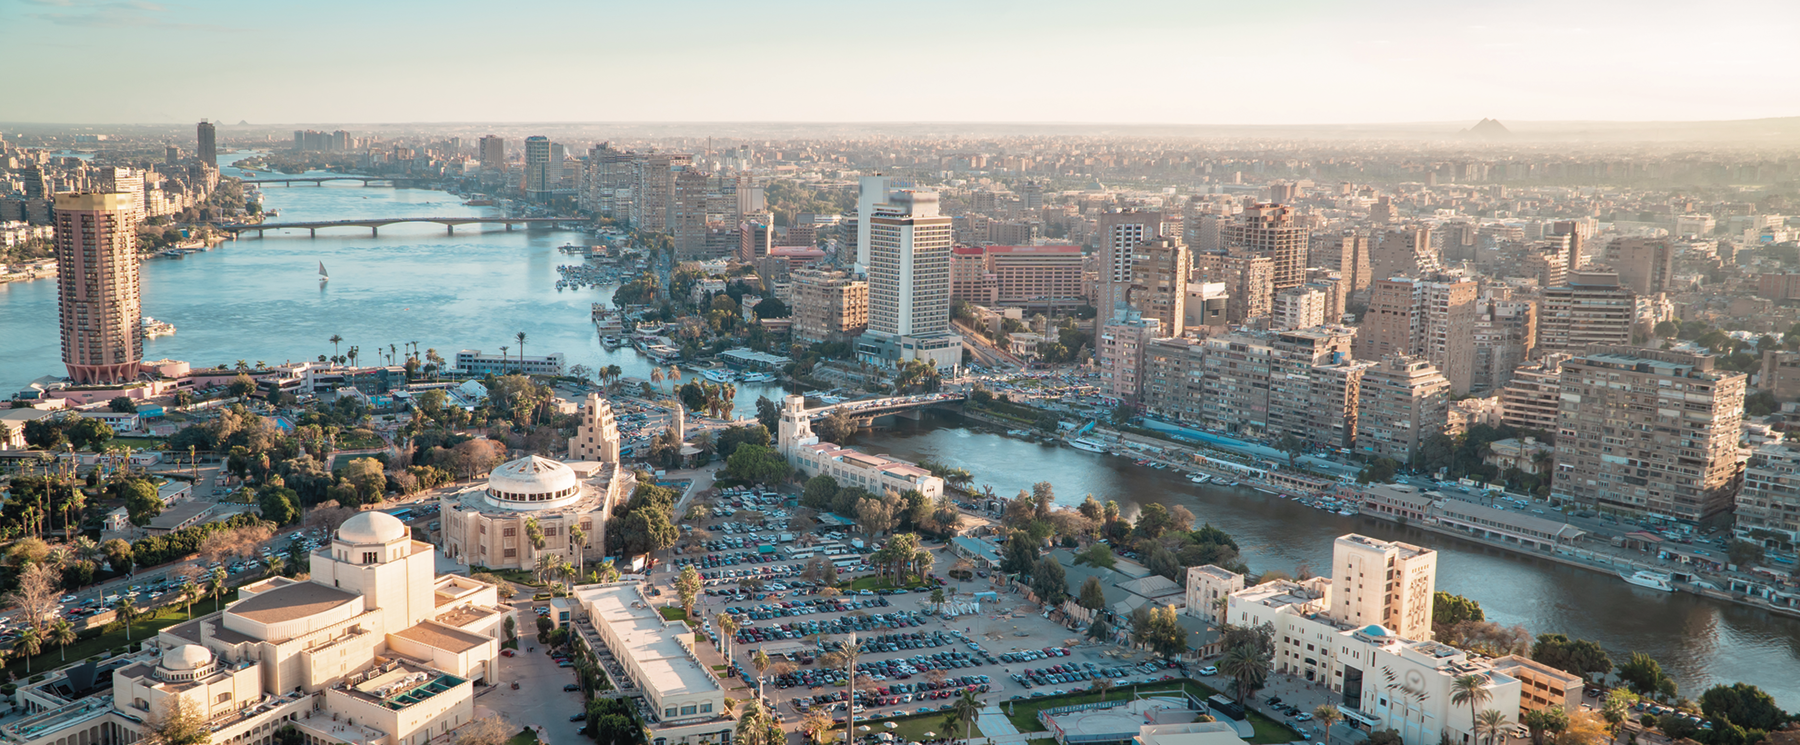 Fotografia. O rio Nilo cortando uma cidade com muitos edifícios. Há diversas pontes sobre ele e na margem esquerda, construções baixas com cúpulas e um grande estacionamento.